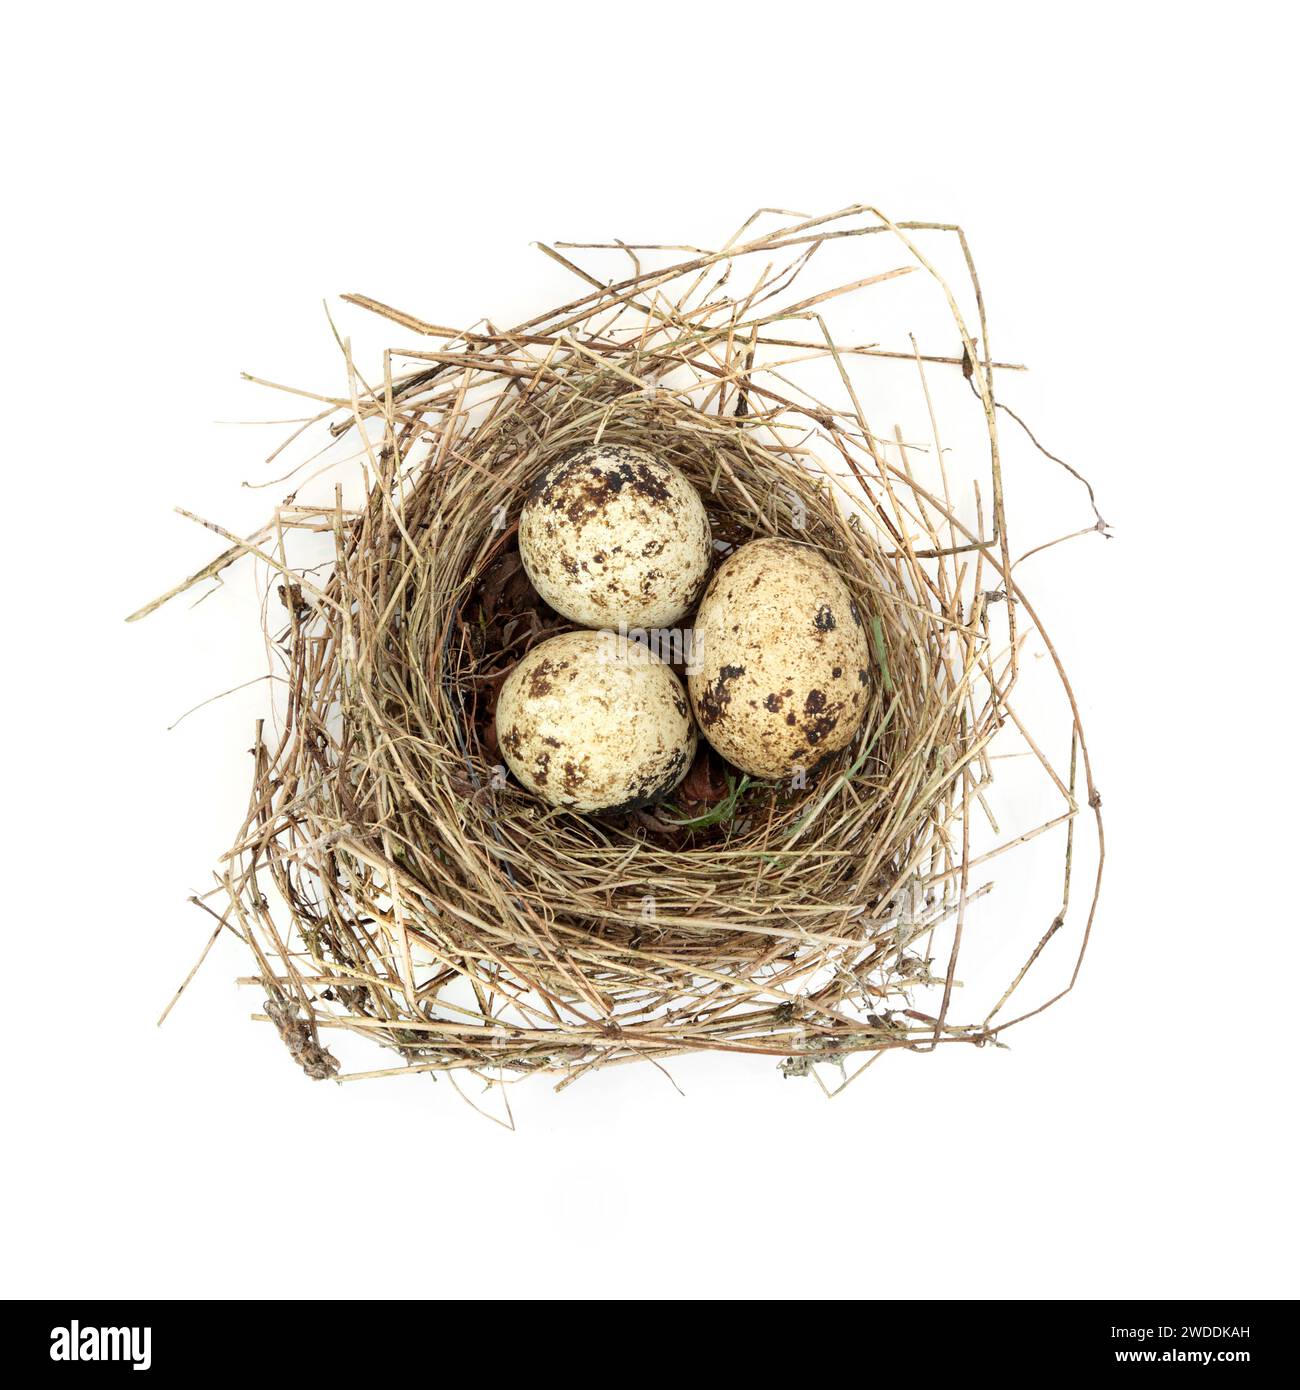 Huevos de codorniz en nido de pájaro sobre fondo blanco. Primavera naturaleza comestible concepto de comida gourmet saludable. Foto de stock